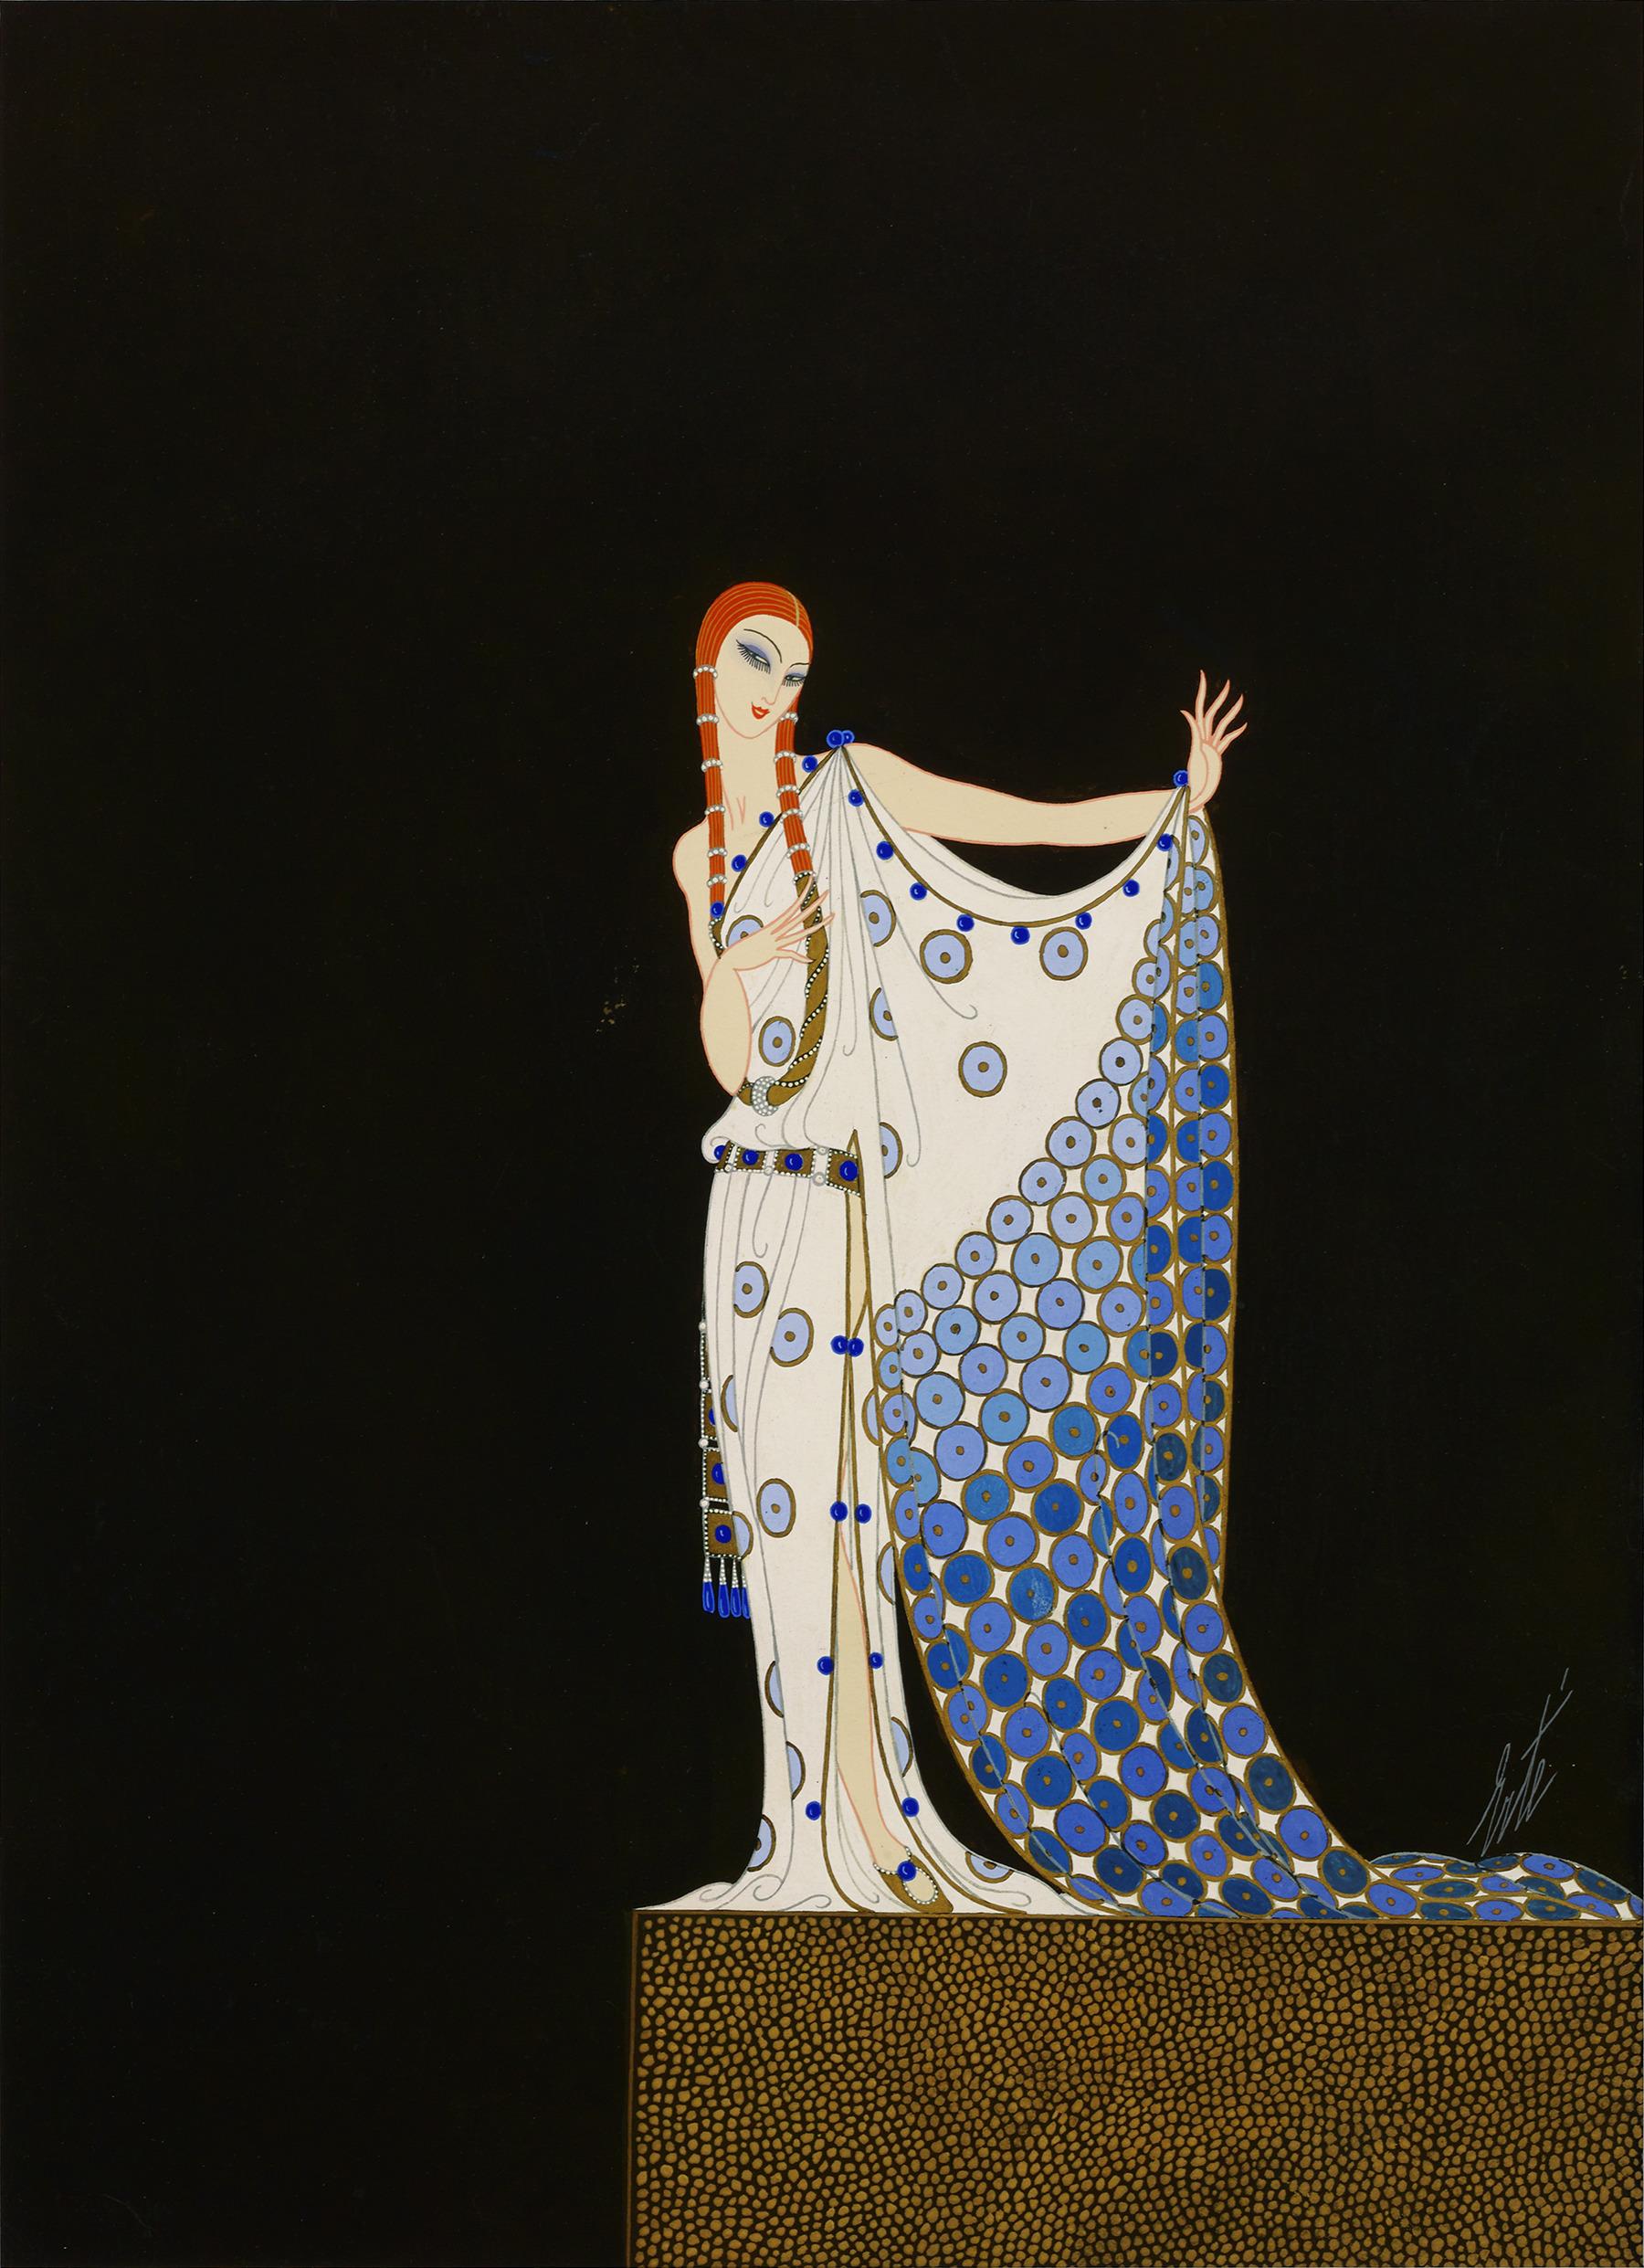 Erté (Romain de Tirtoff)
1892-1990  Russian-French
Costume à l'Antique

Signed 